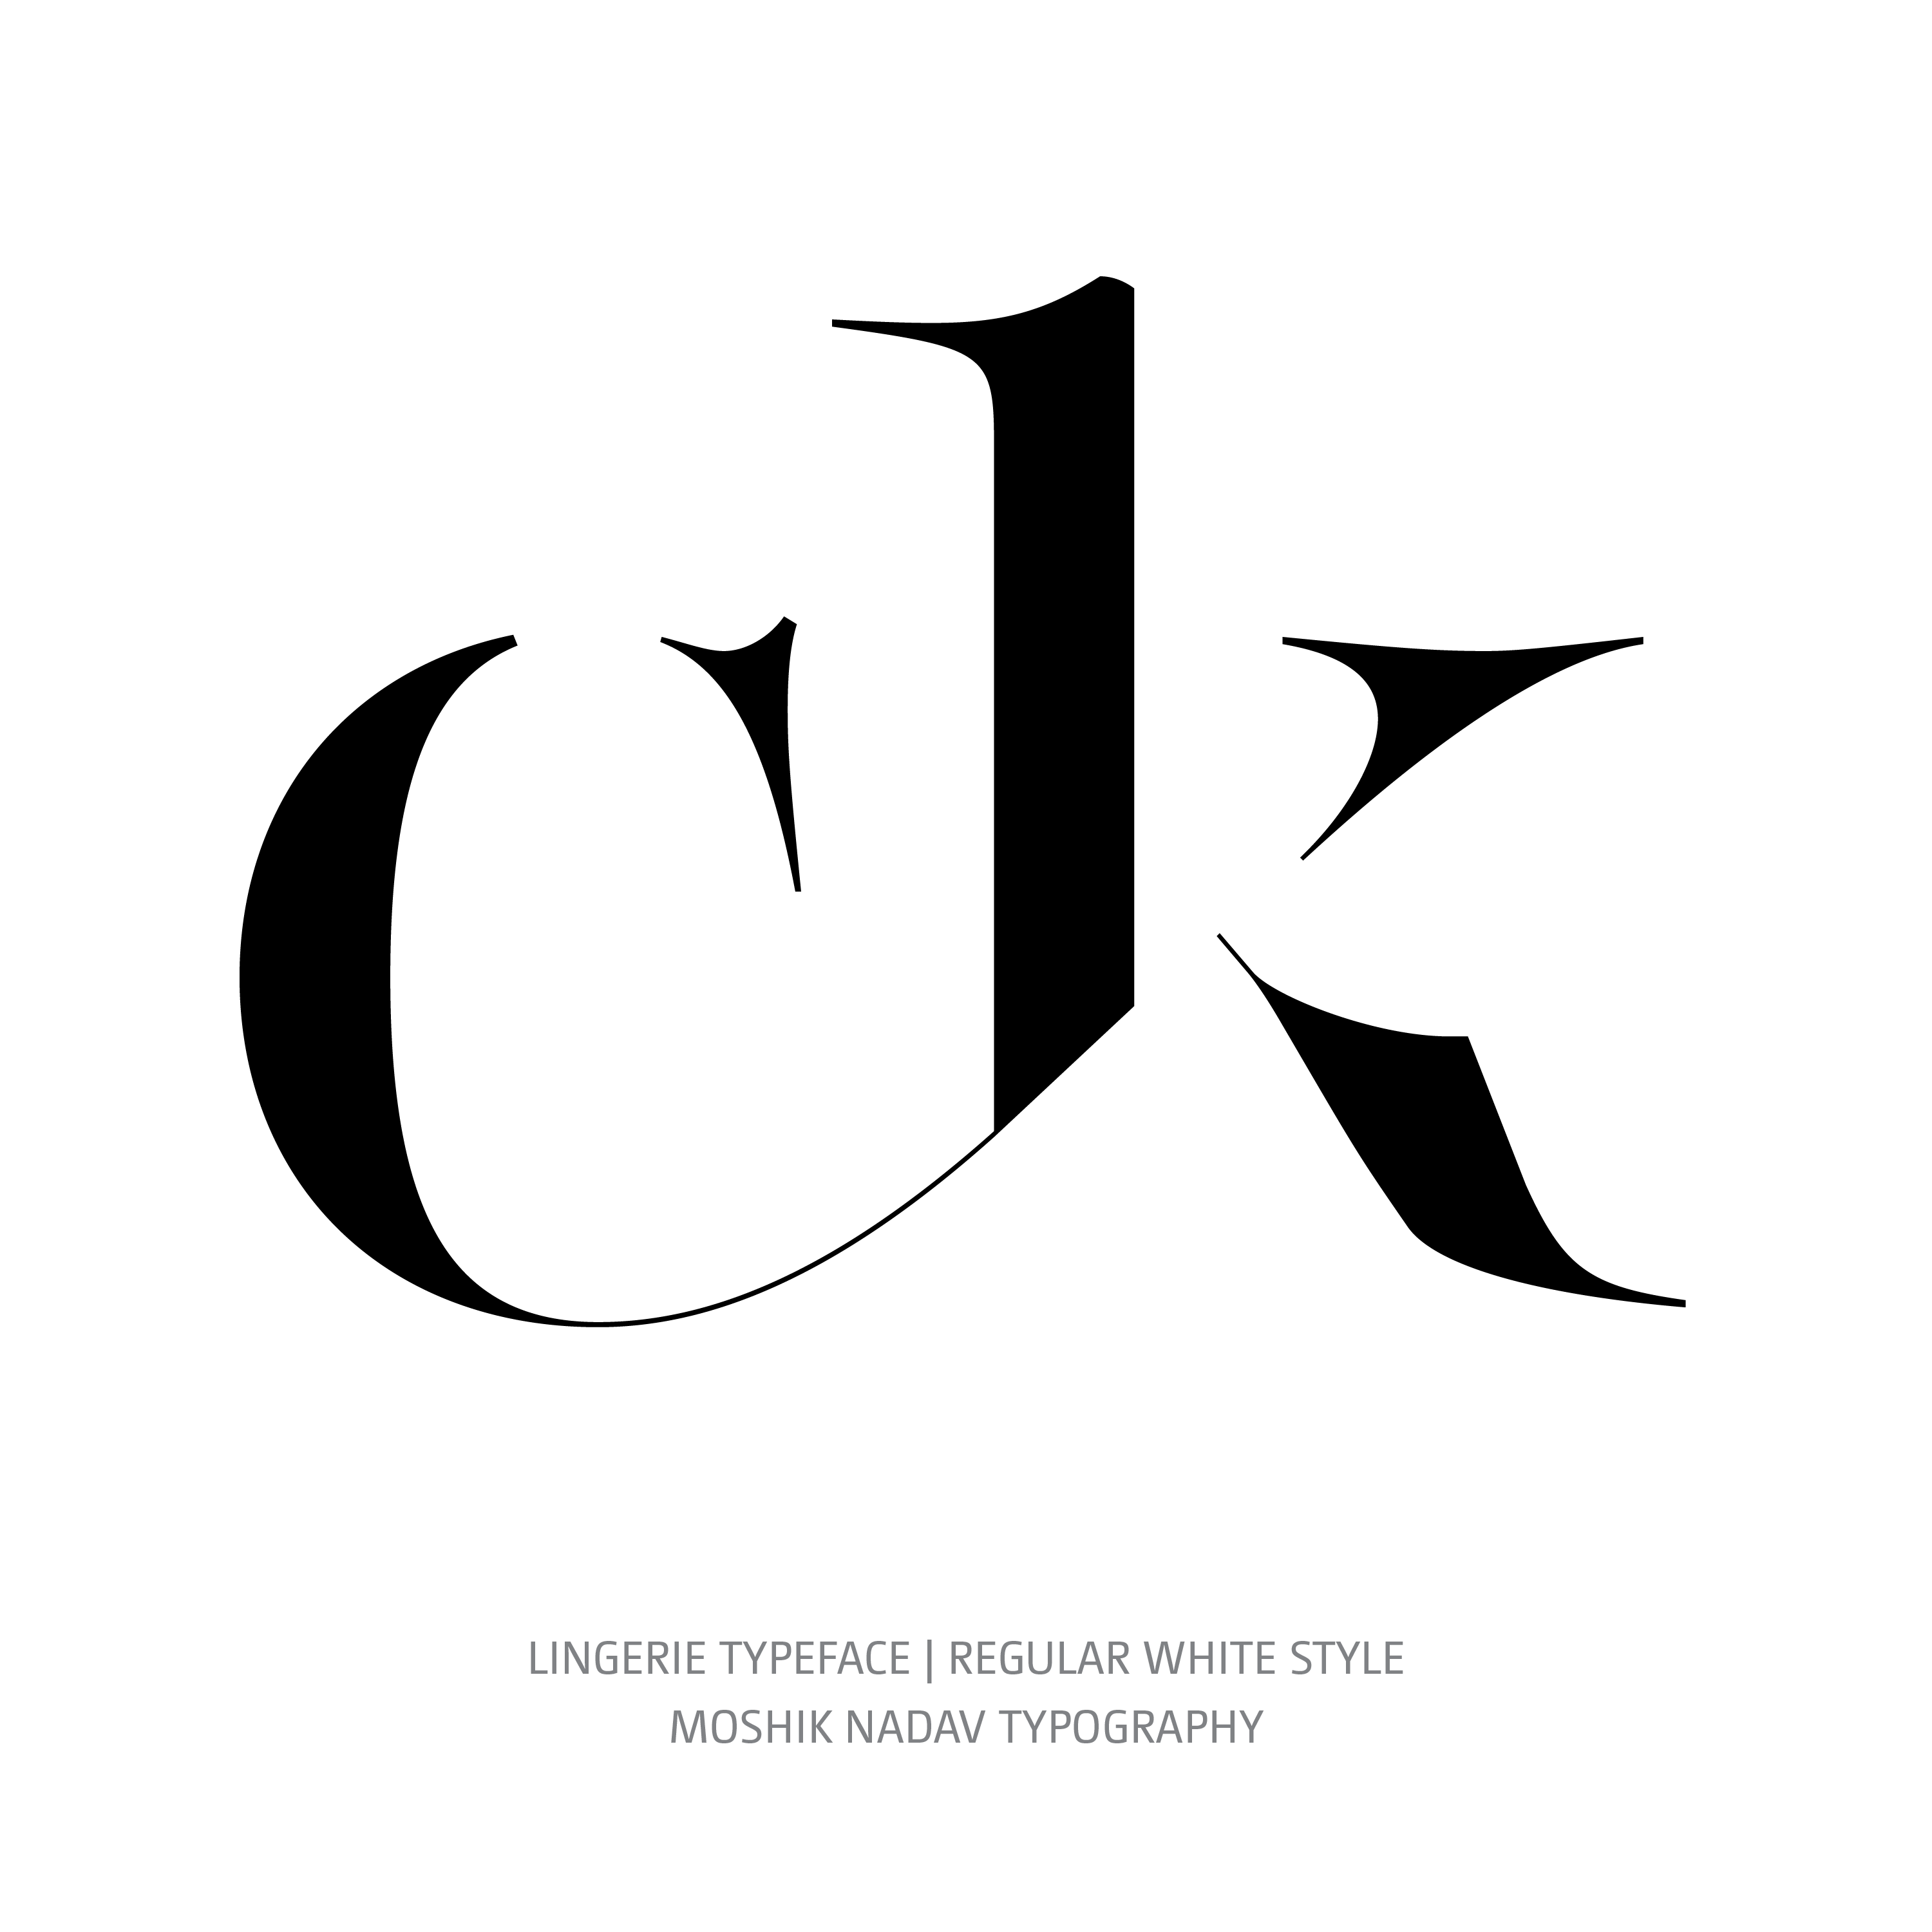 Lingerie Typeface Regular White glyph